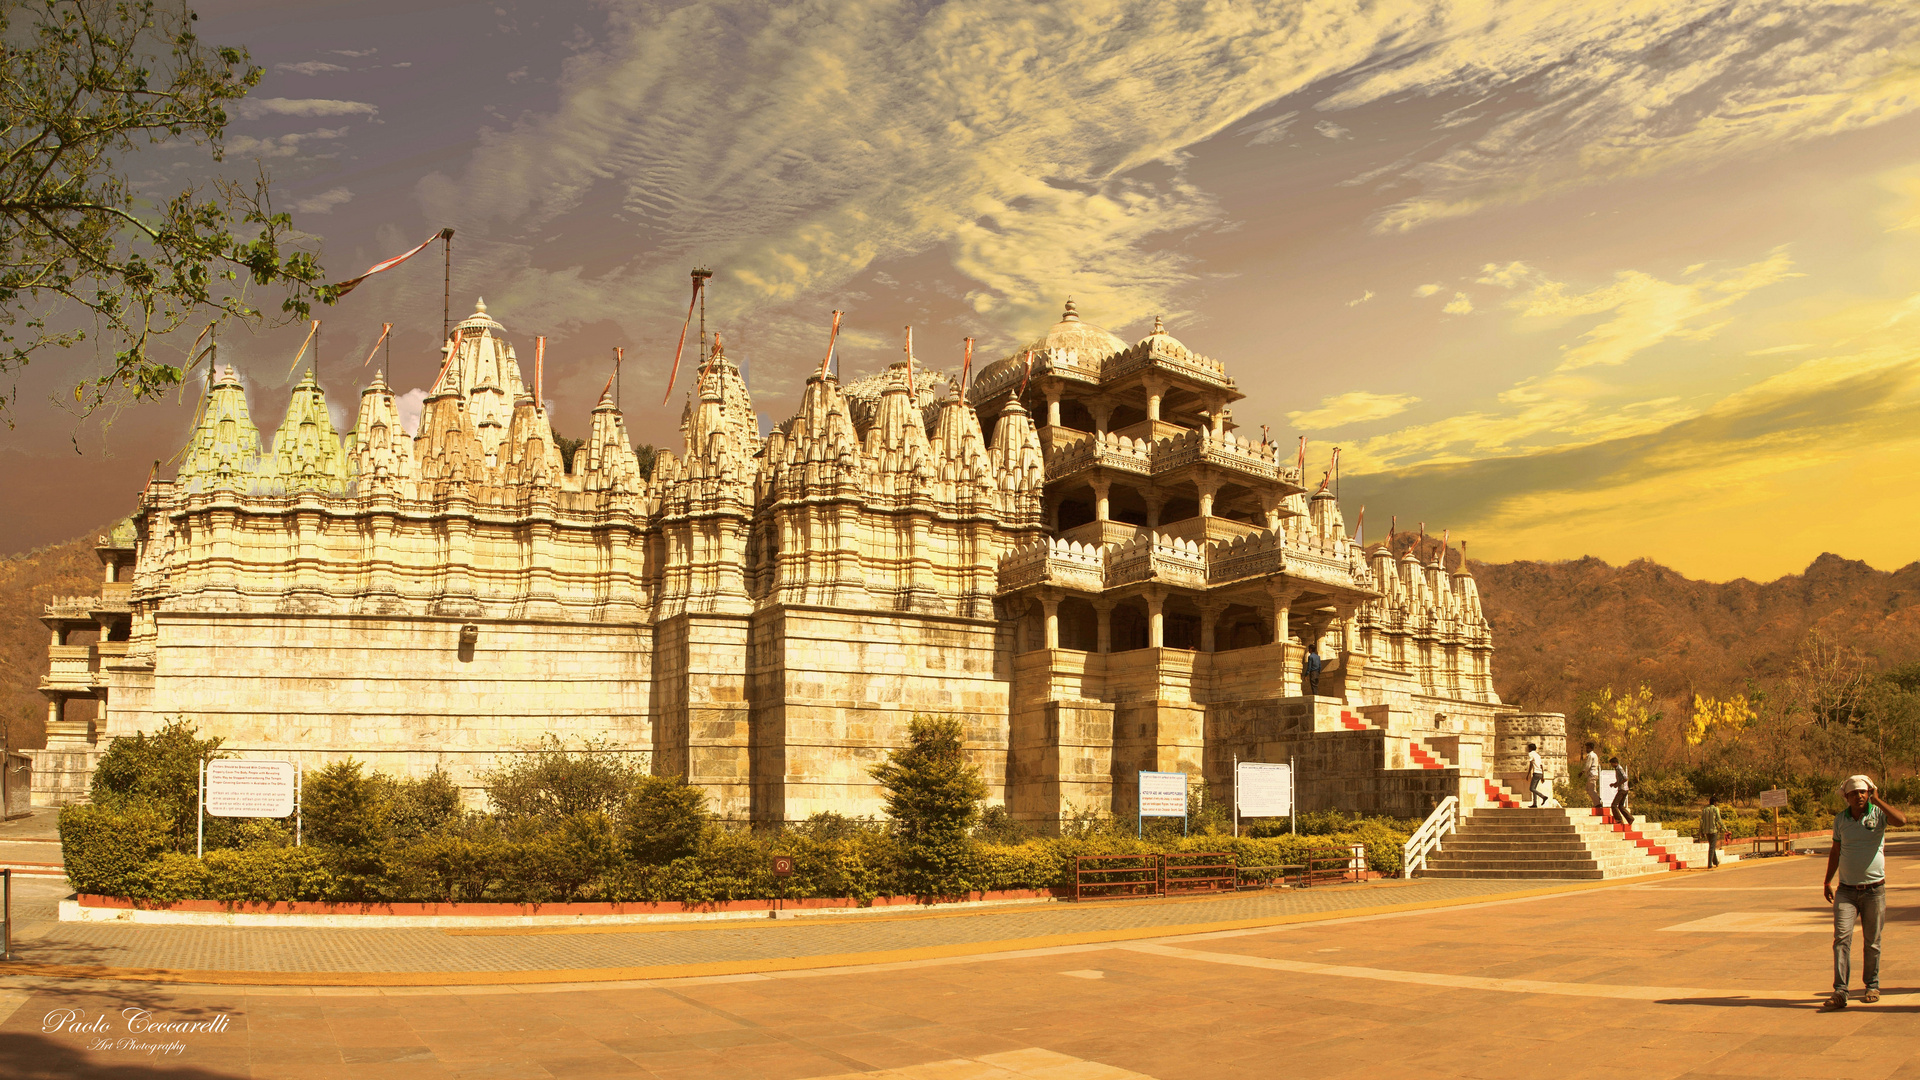 Jagdish Temple, Udaipur